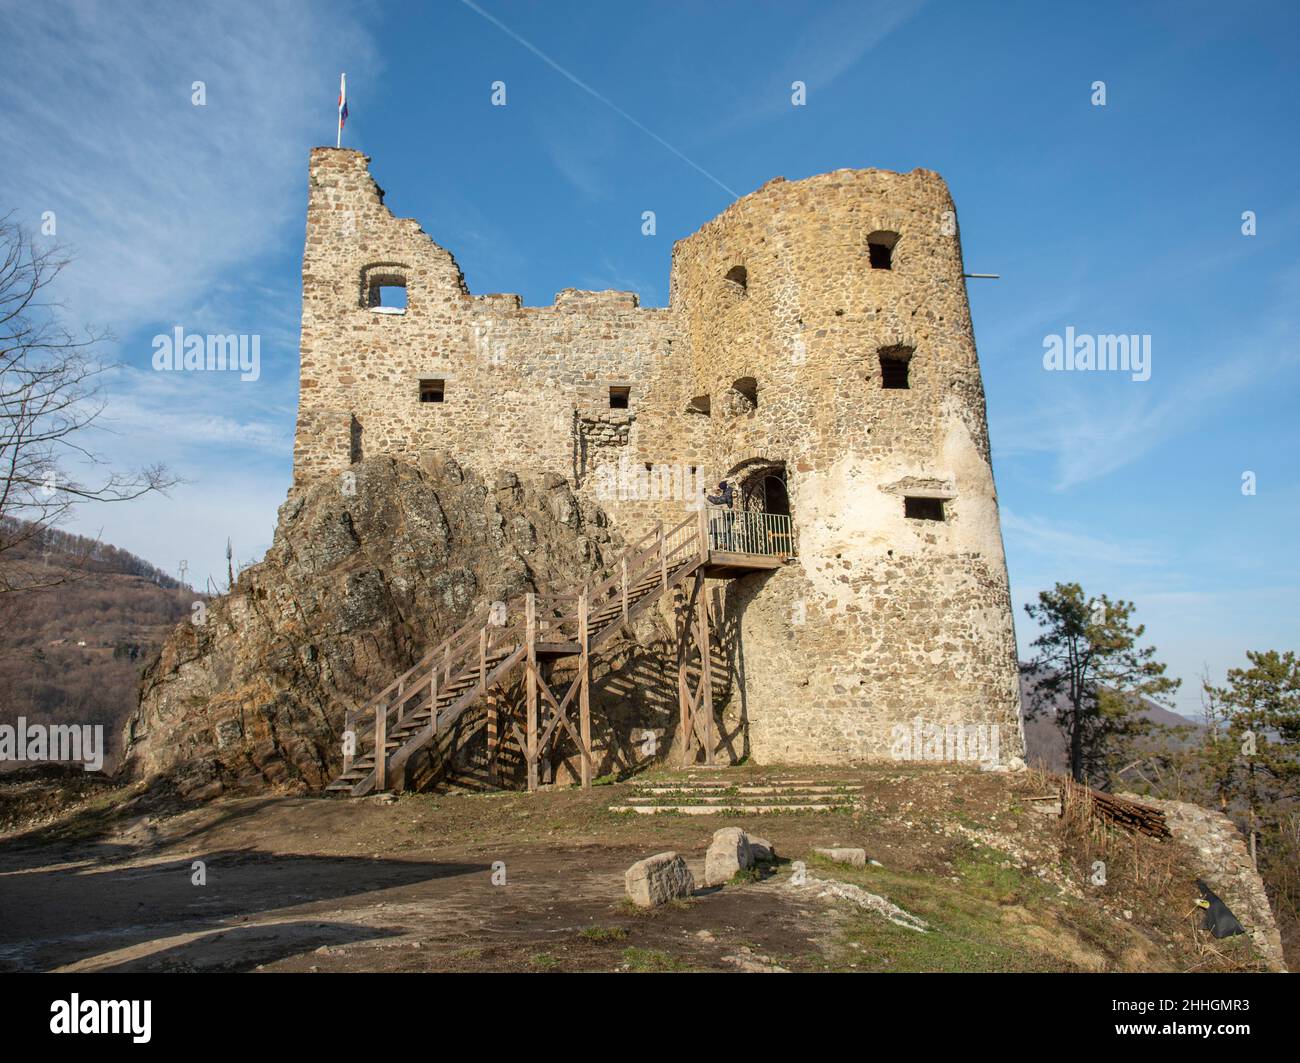 Ruins of medieval gothic castle Reviste. Revistske Podzamcie castle. Slovakia. Stock Photo